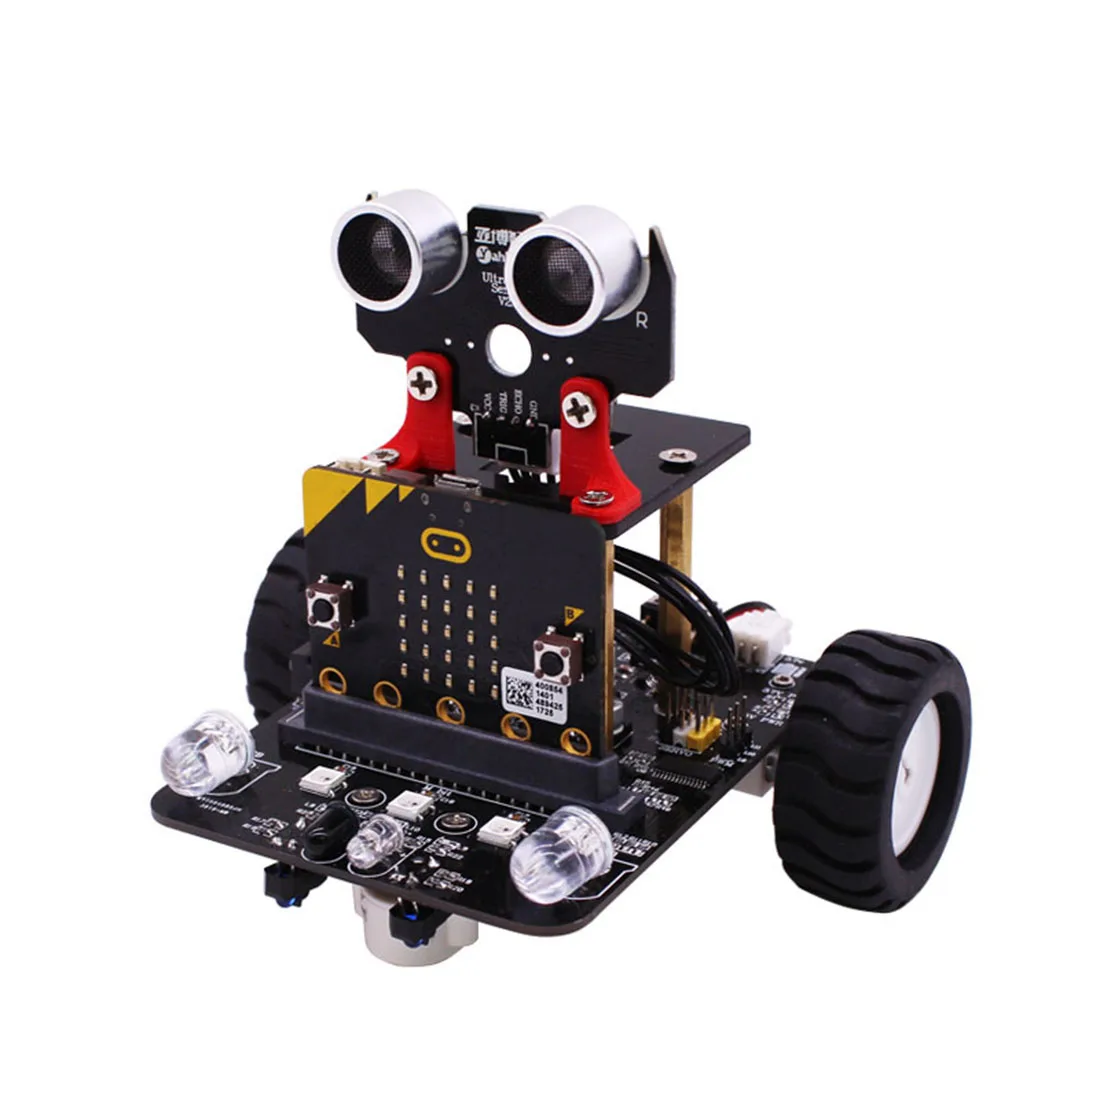 Voiture Robot Programmable graphique avec Bluetooth IR et Module de suivi tige Robot vapeur voiture jouet pour Micro:bit (sans carte mère)